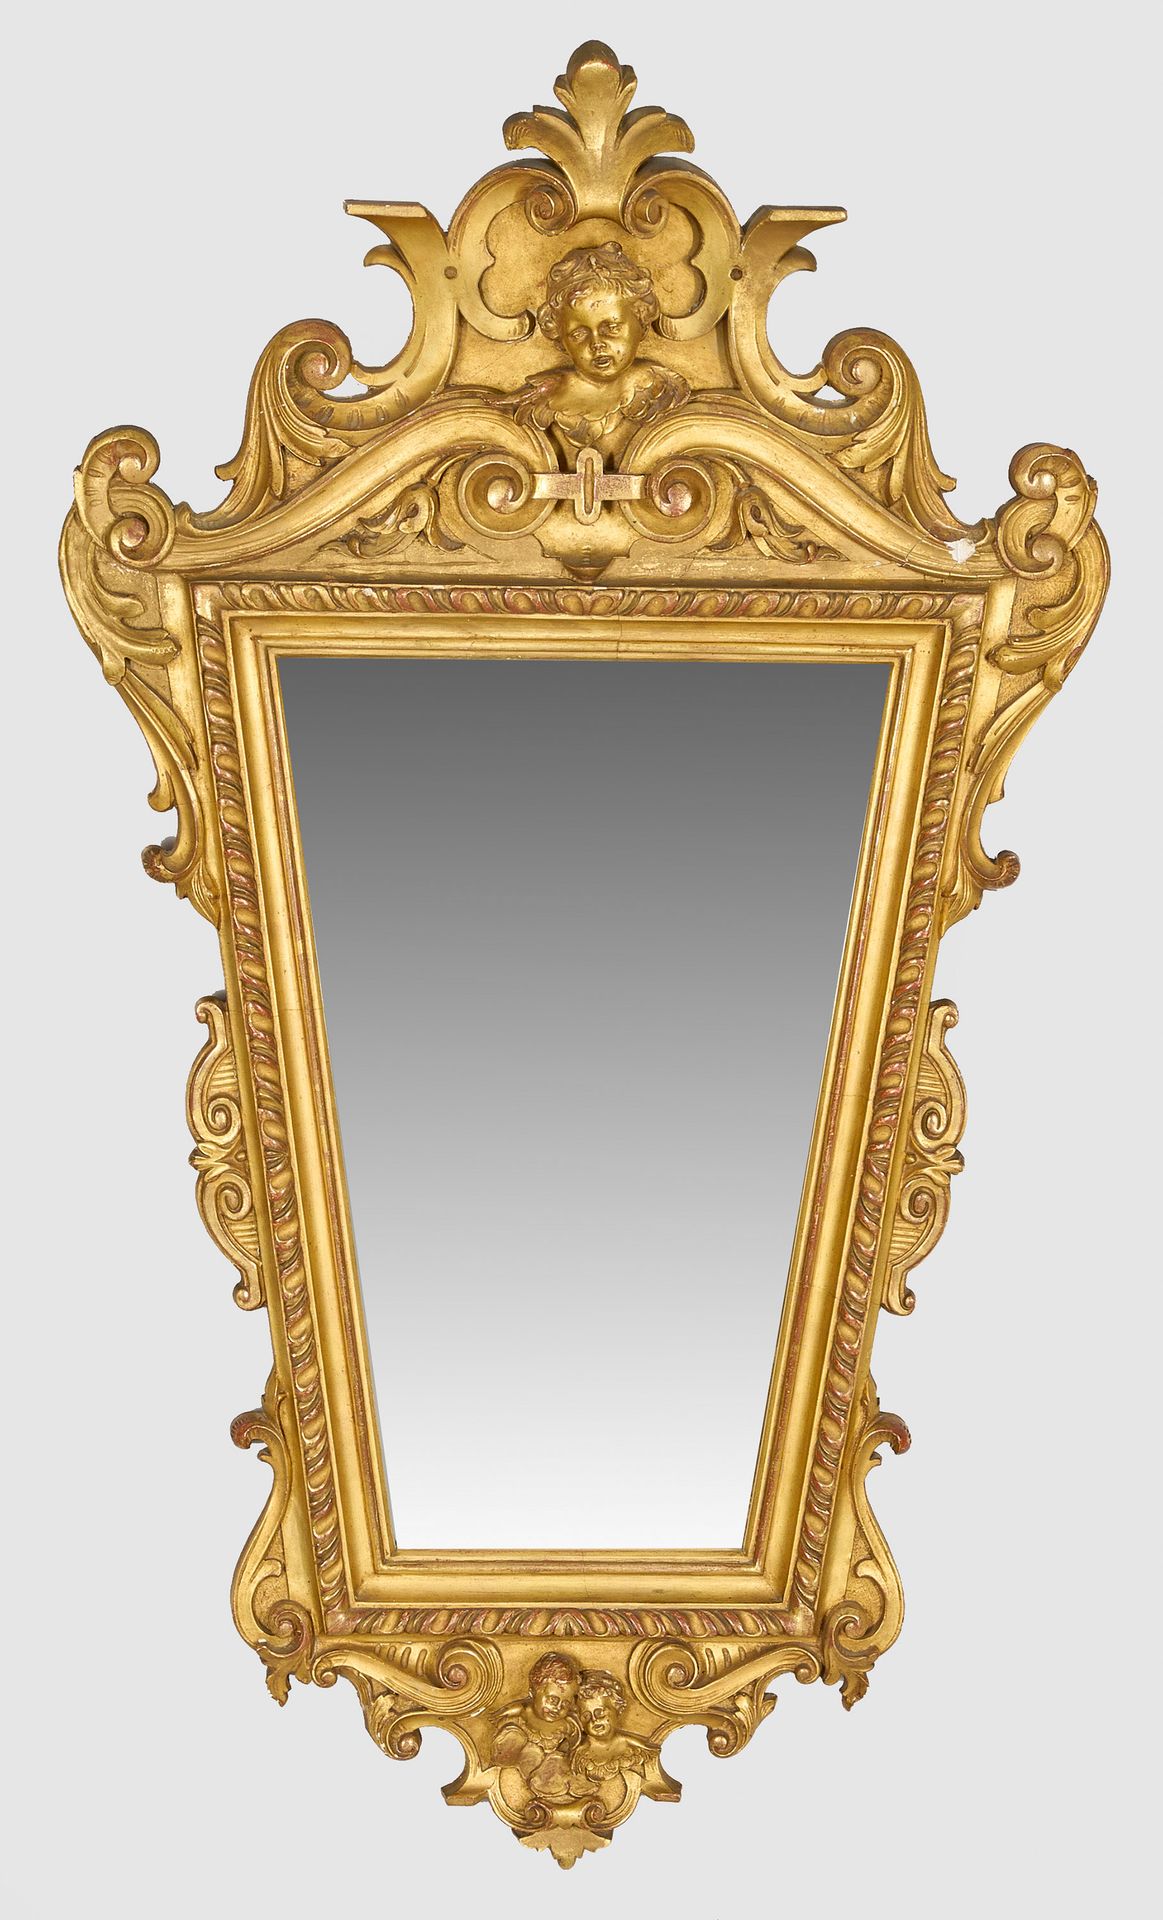 Null 拿破仑三世壁镜，木质，粉刷和镀金。梯形模制镜框，四周环绕着各种涡形图案。与之相对应的是由卷曲涡形图案组成的镜冠，镜冠与中央的菩提树头相互映衬。其余部分&hellip;